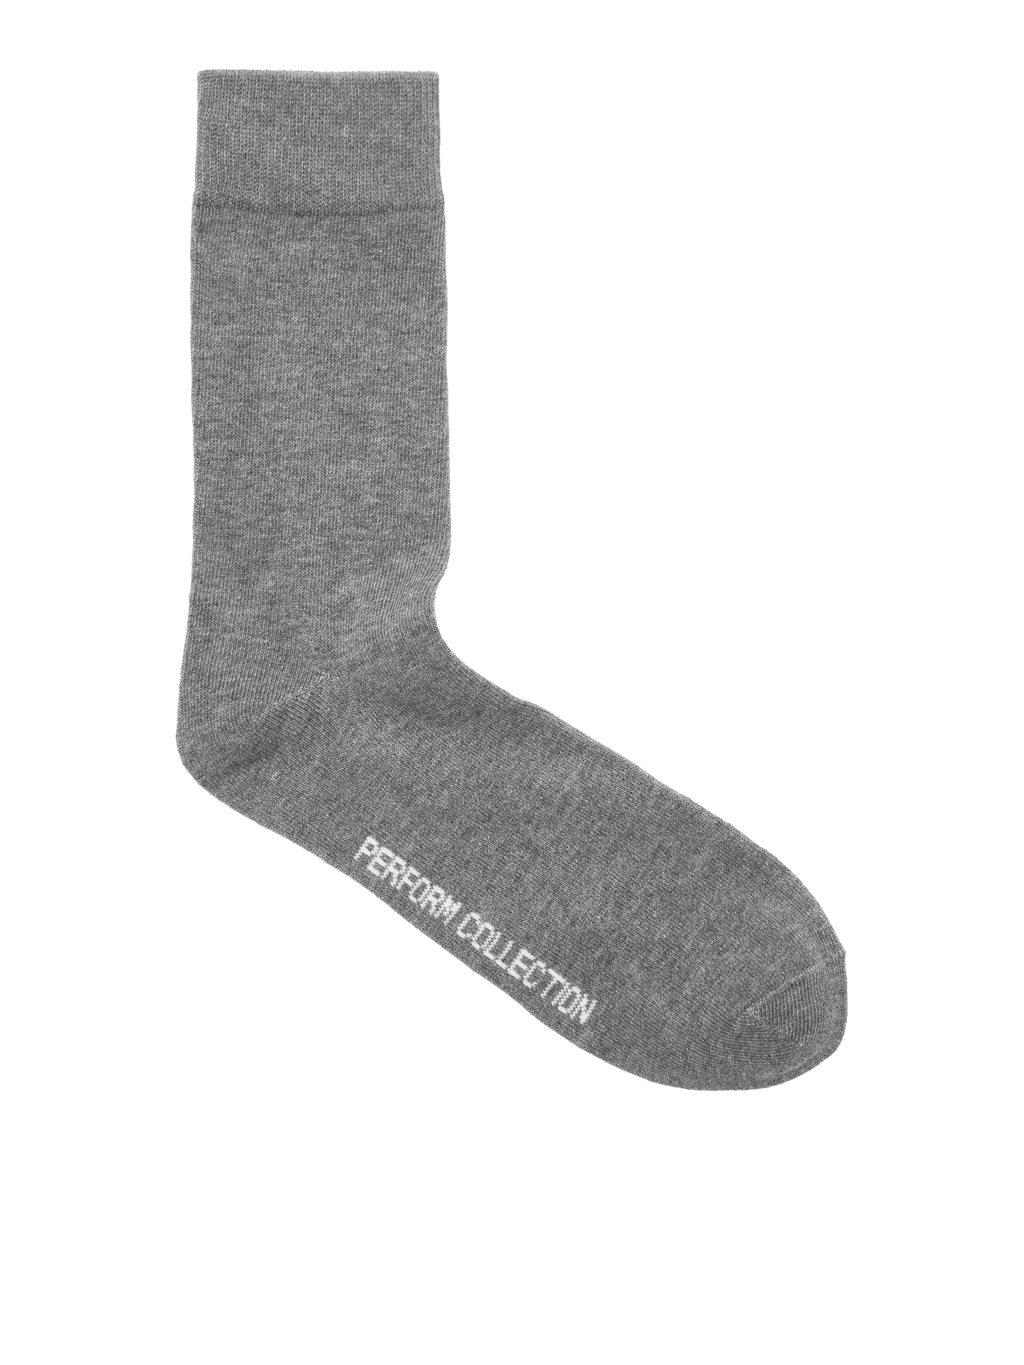 Performance Socks - 10 pcs. - Grey